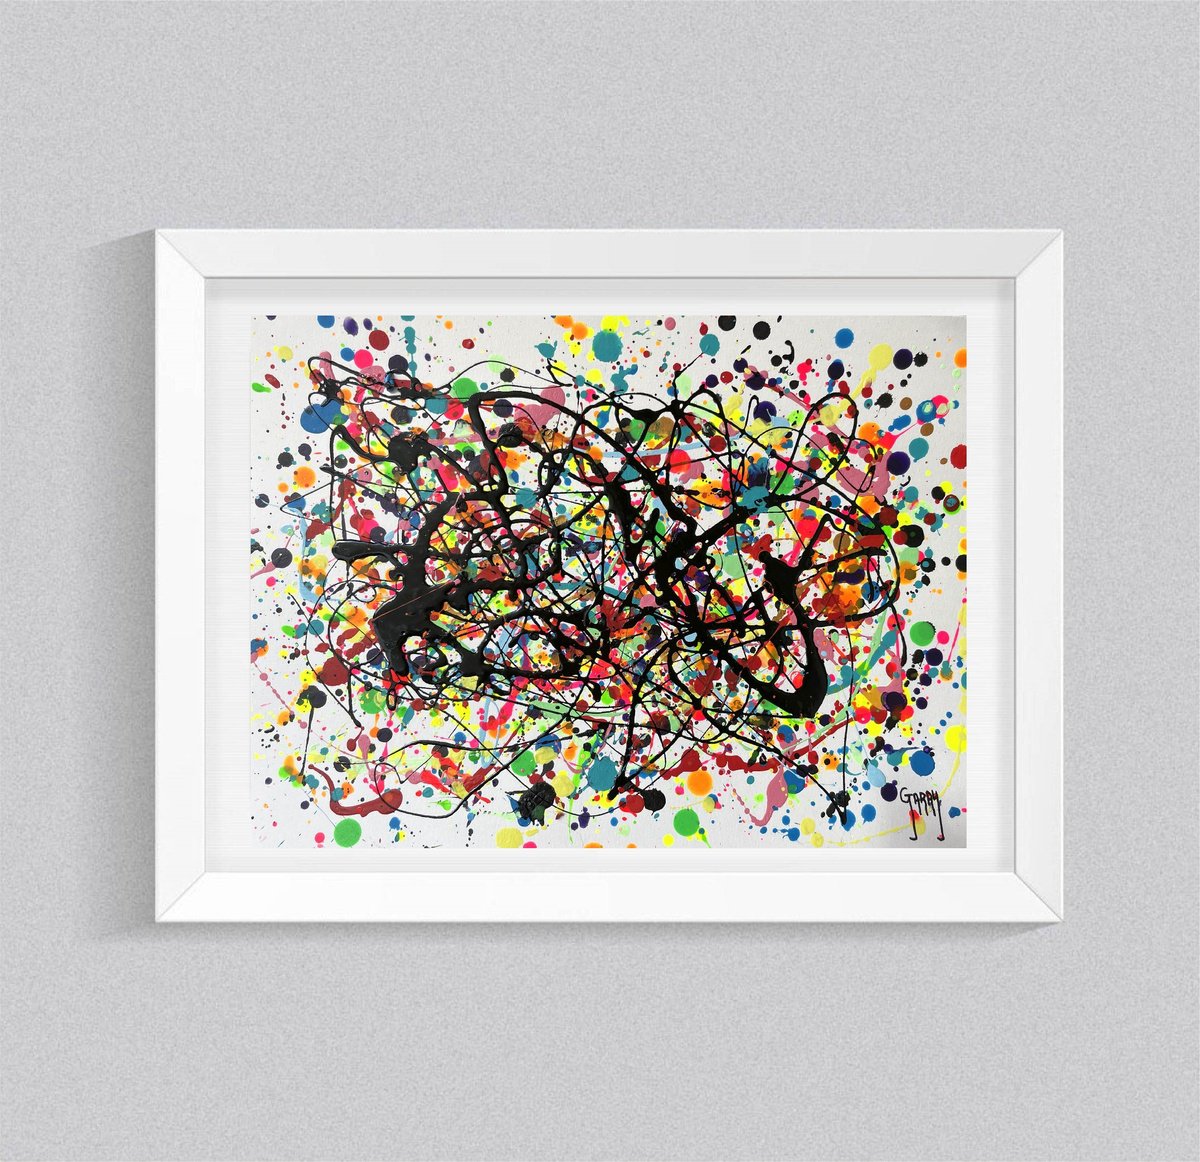 Abstract Pollock 12 by Juan Jose Garay